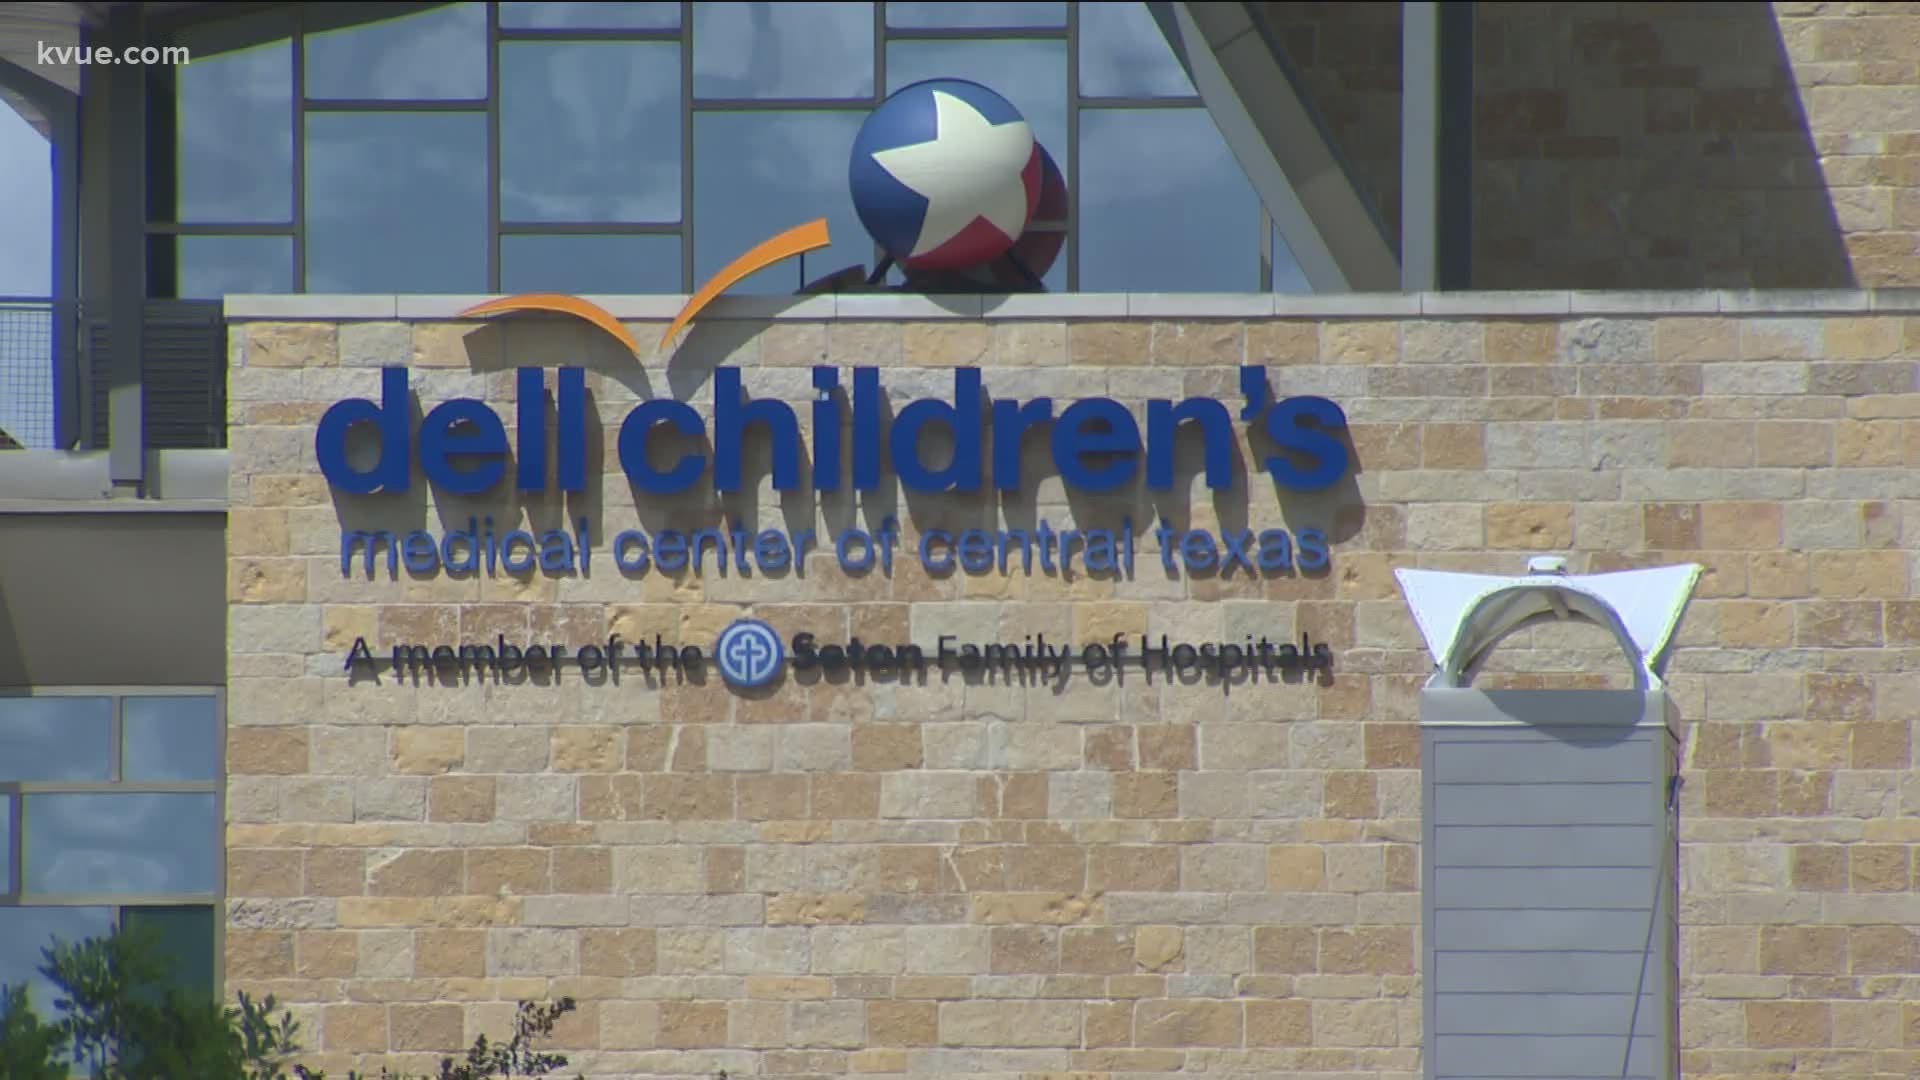 New 450M Texas Children's Hospital in North Austin to service children